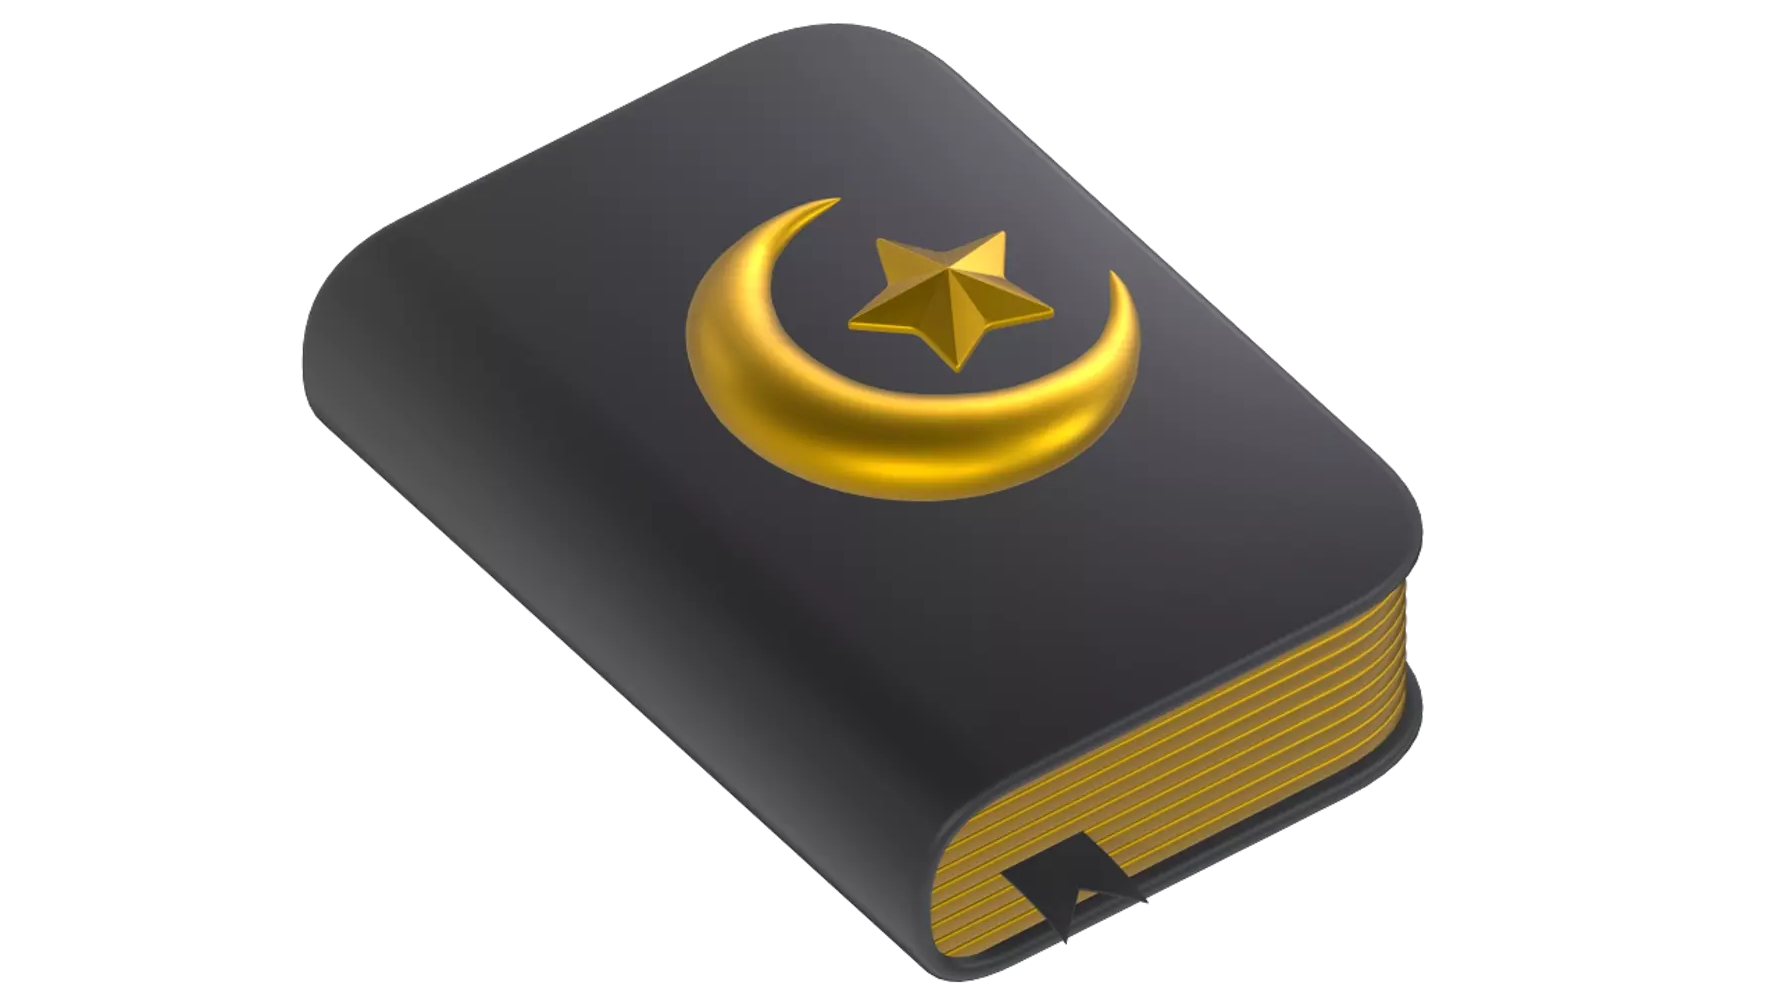 Quran Book 3d model--79507061-05a0-4ed4-8c9e-5df0e2b70f31